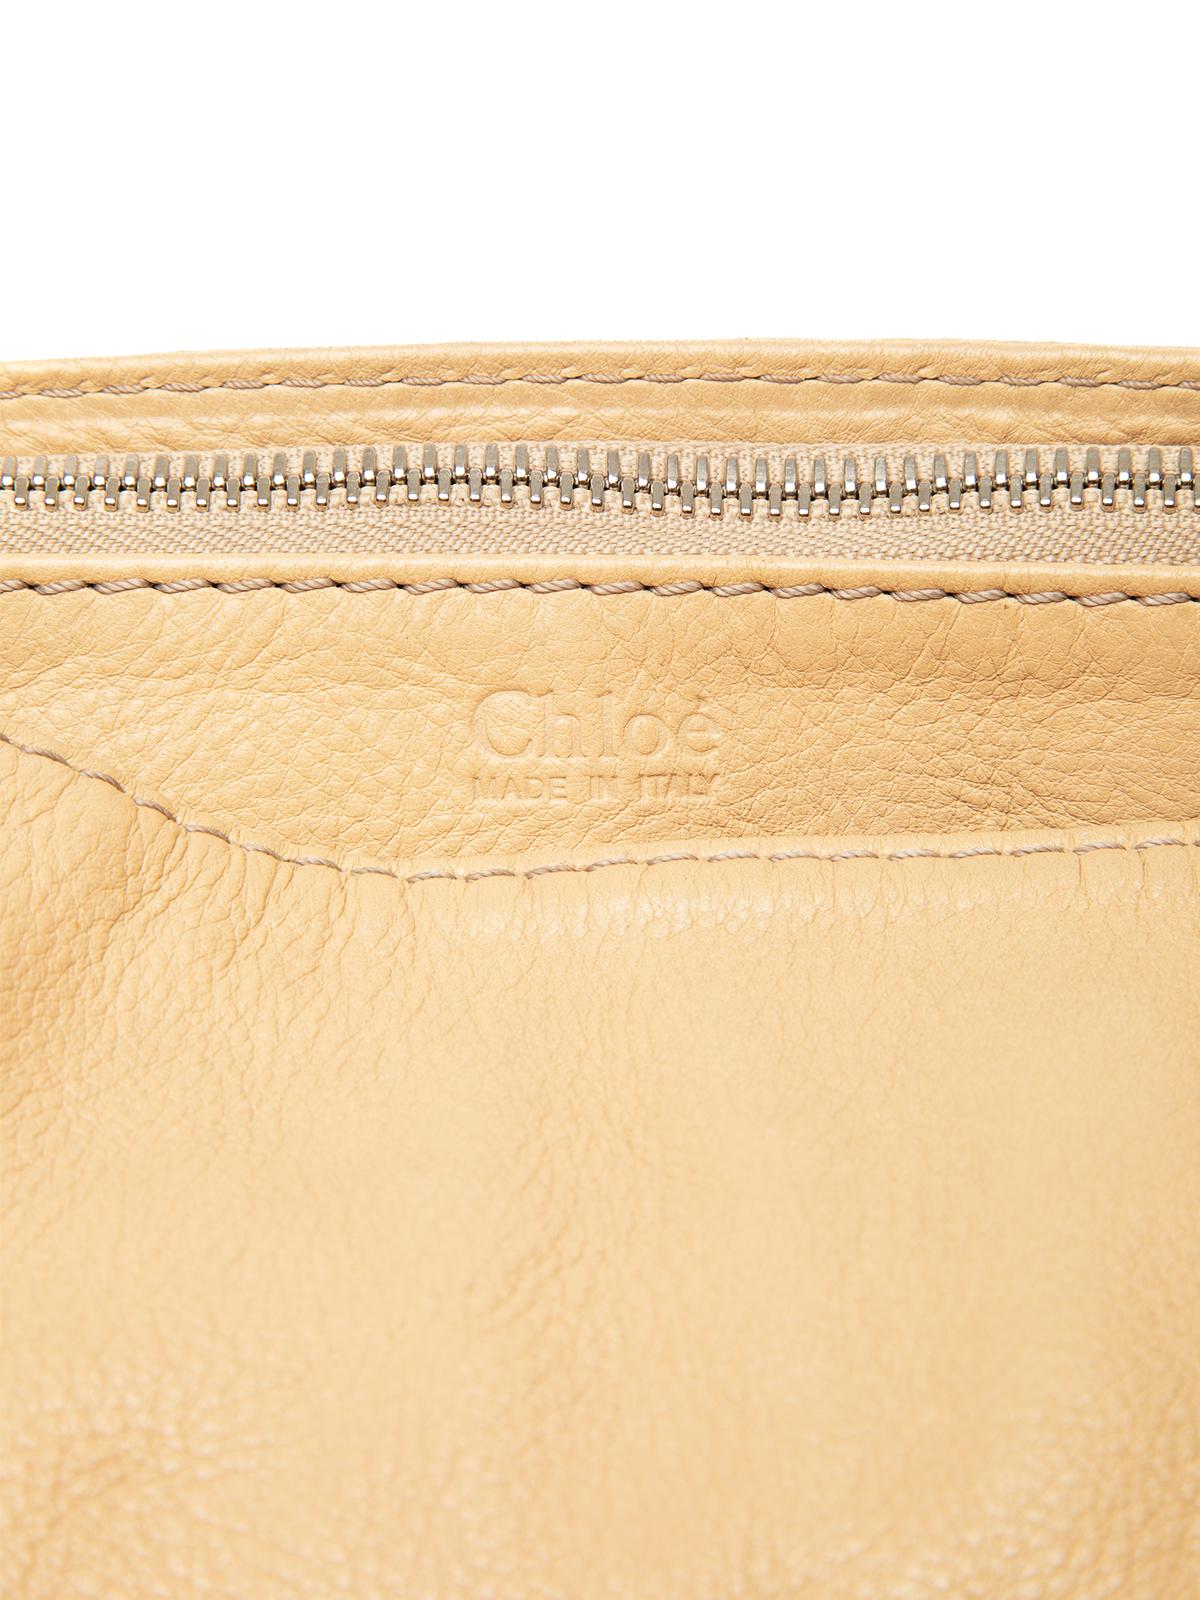 Pre-Loved Chloé Women's Vintage Leather Shoulder Bag 3